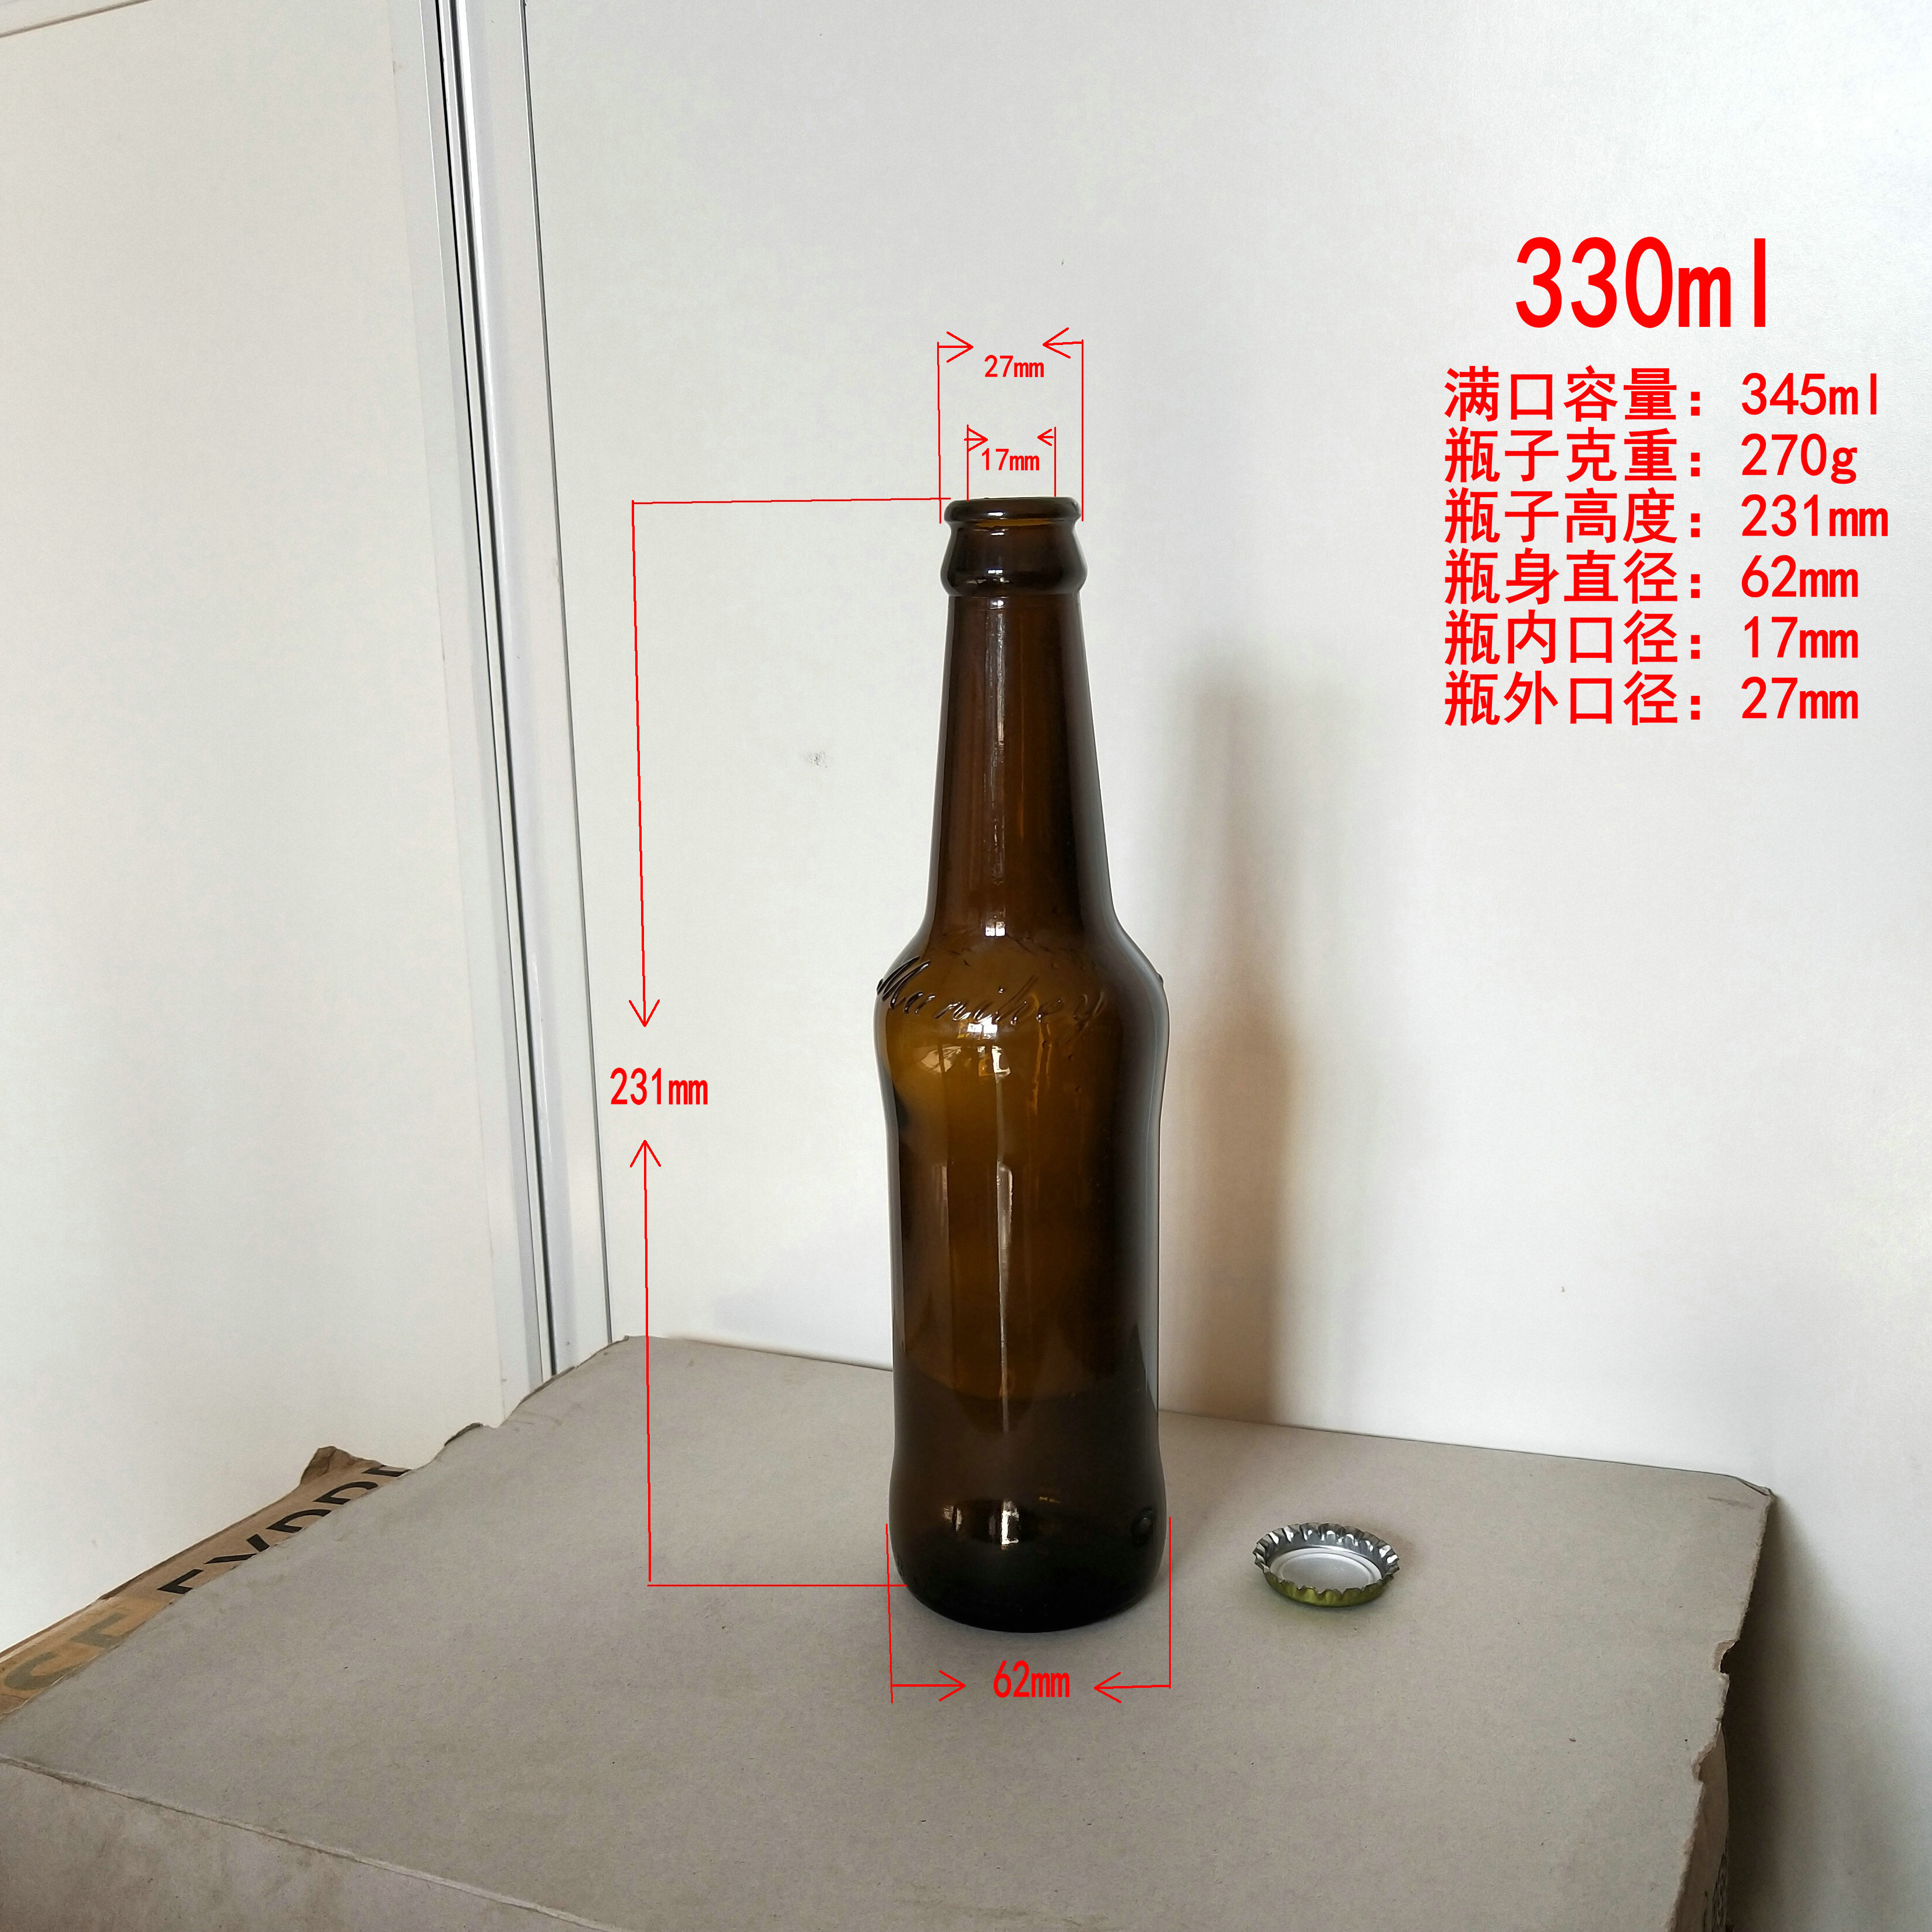 啤酒瓶生产厂家225ml235ml275ml330ml500ml650ml 啤酒玻璃瓶食品包装玻璃制品生产商 玻璃啤酒瓶2